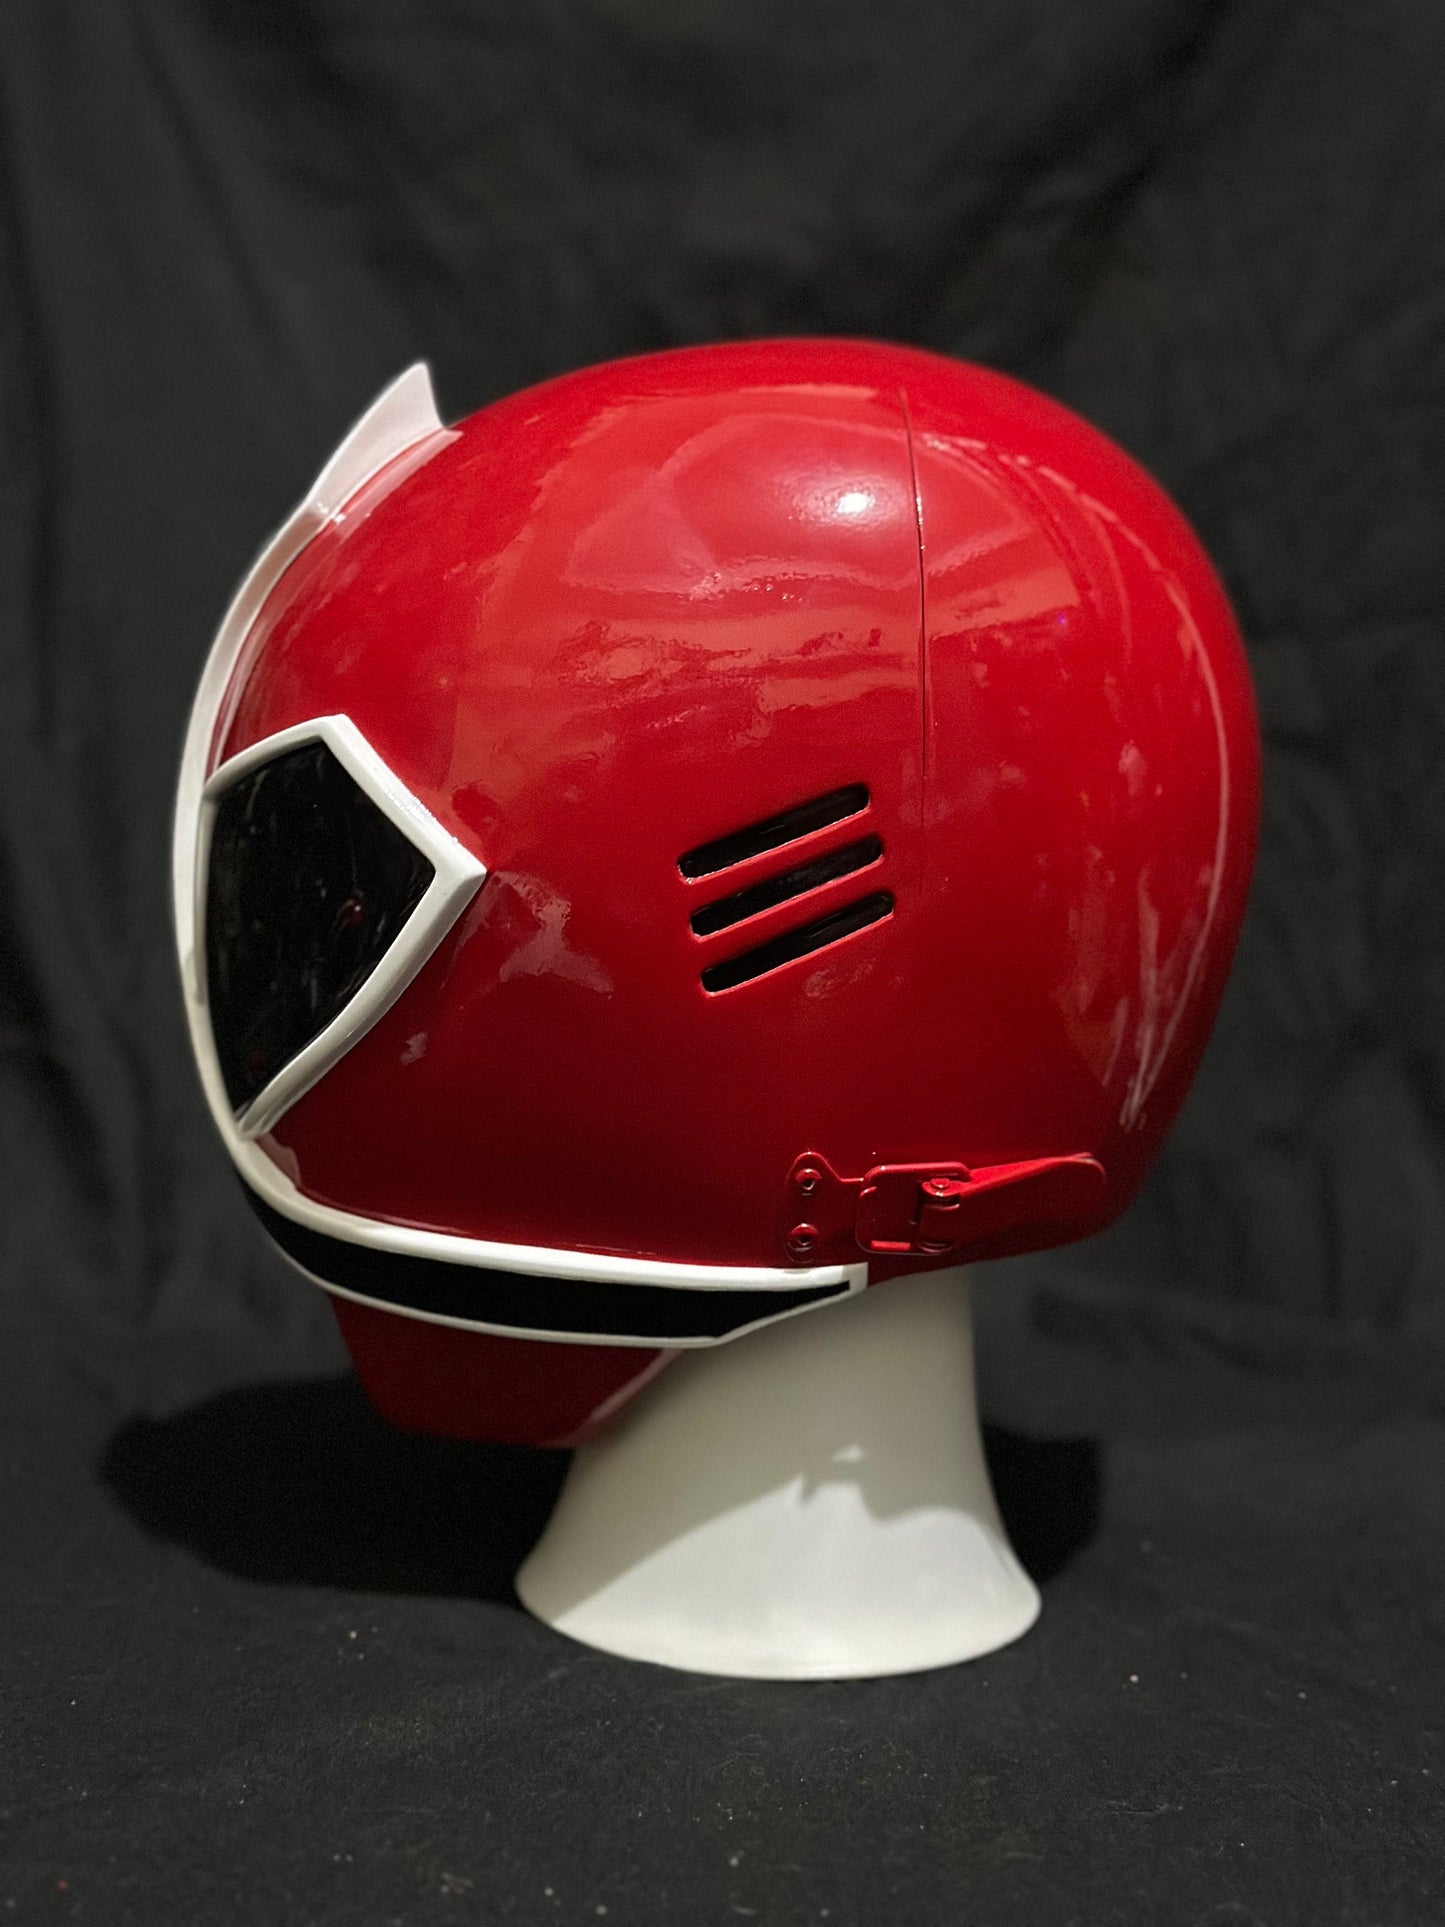 Power Rangers red Samurai helmet / red Samurai Sentai Shinkenger helmet